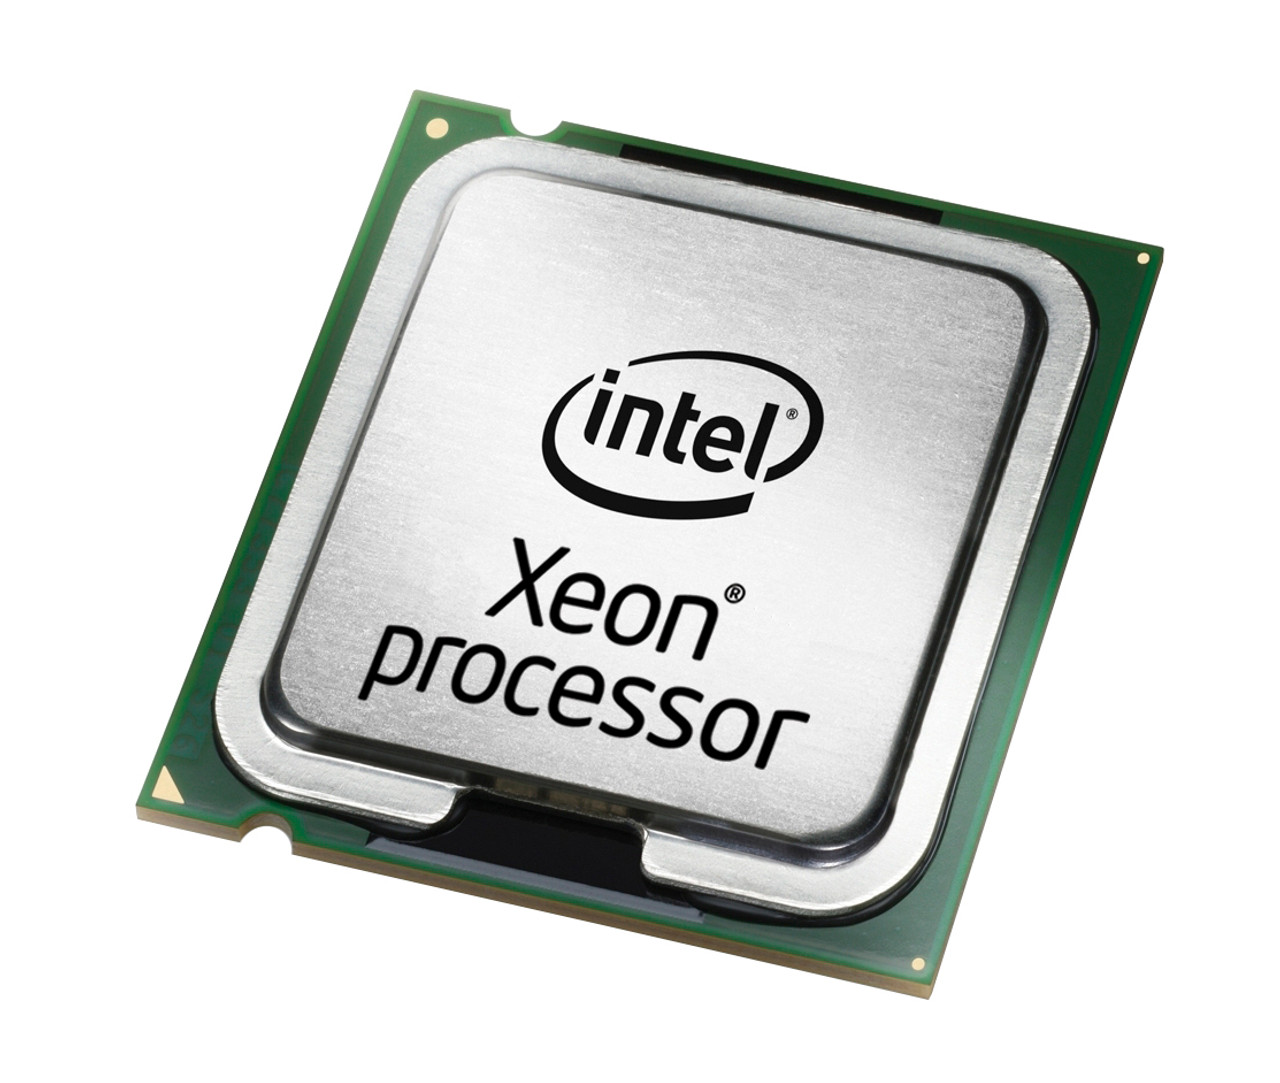 SL9HB-06 Intel Xeon 7130M Dual Core 3.20GHz 800MHz FSB 8MB L2 Cache Socket PPGA604 Processor